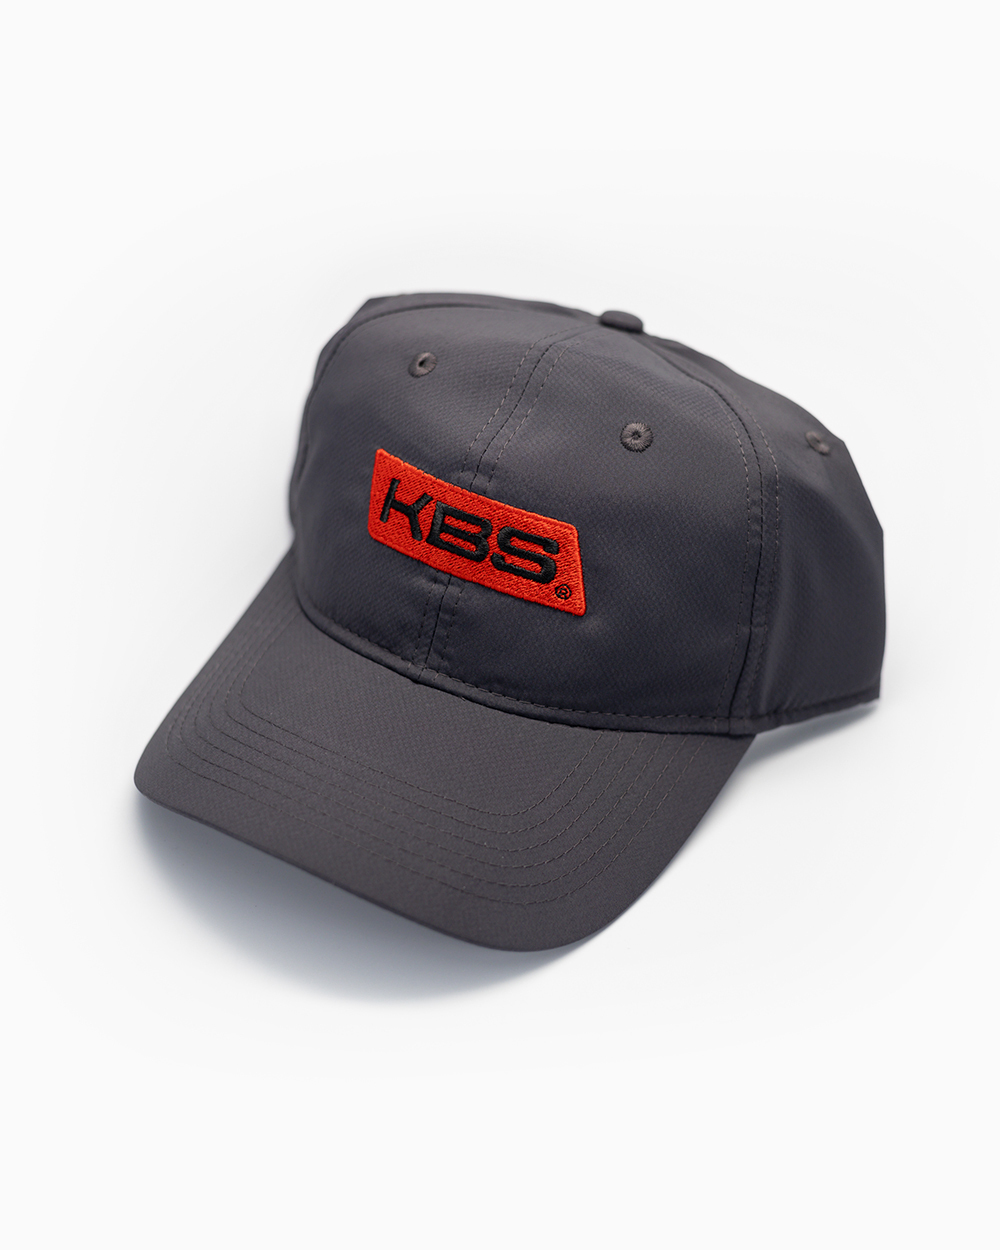 New Solution Flat Brim Hat - KBS